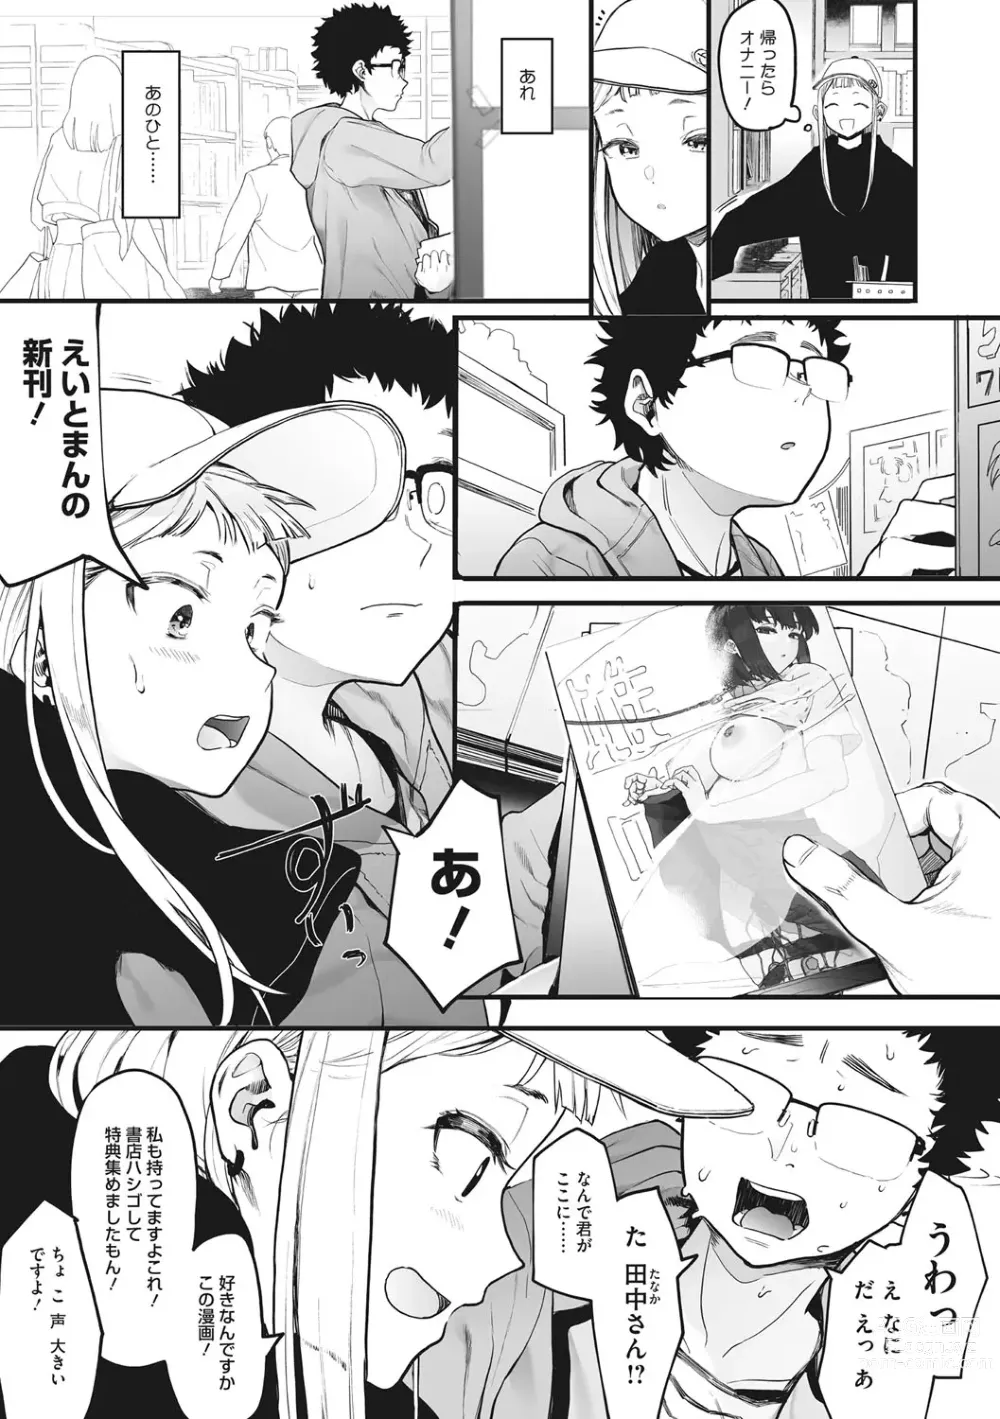 Page 4 of manga Eightman sensei no okagede kanojo ga dekimashita!